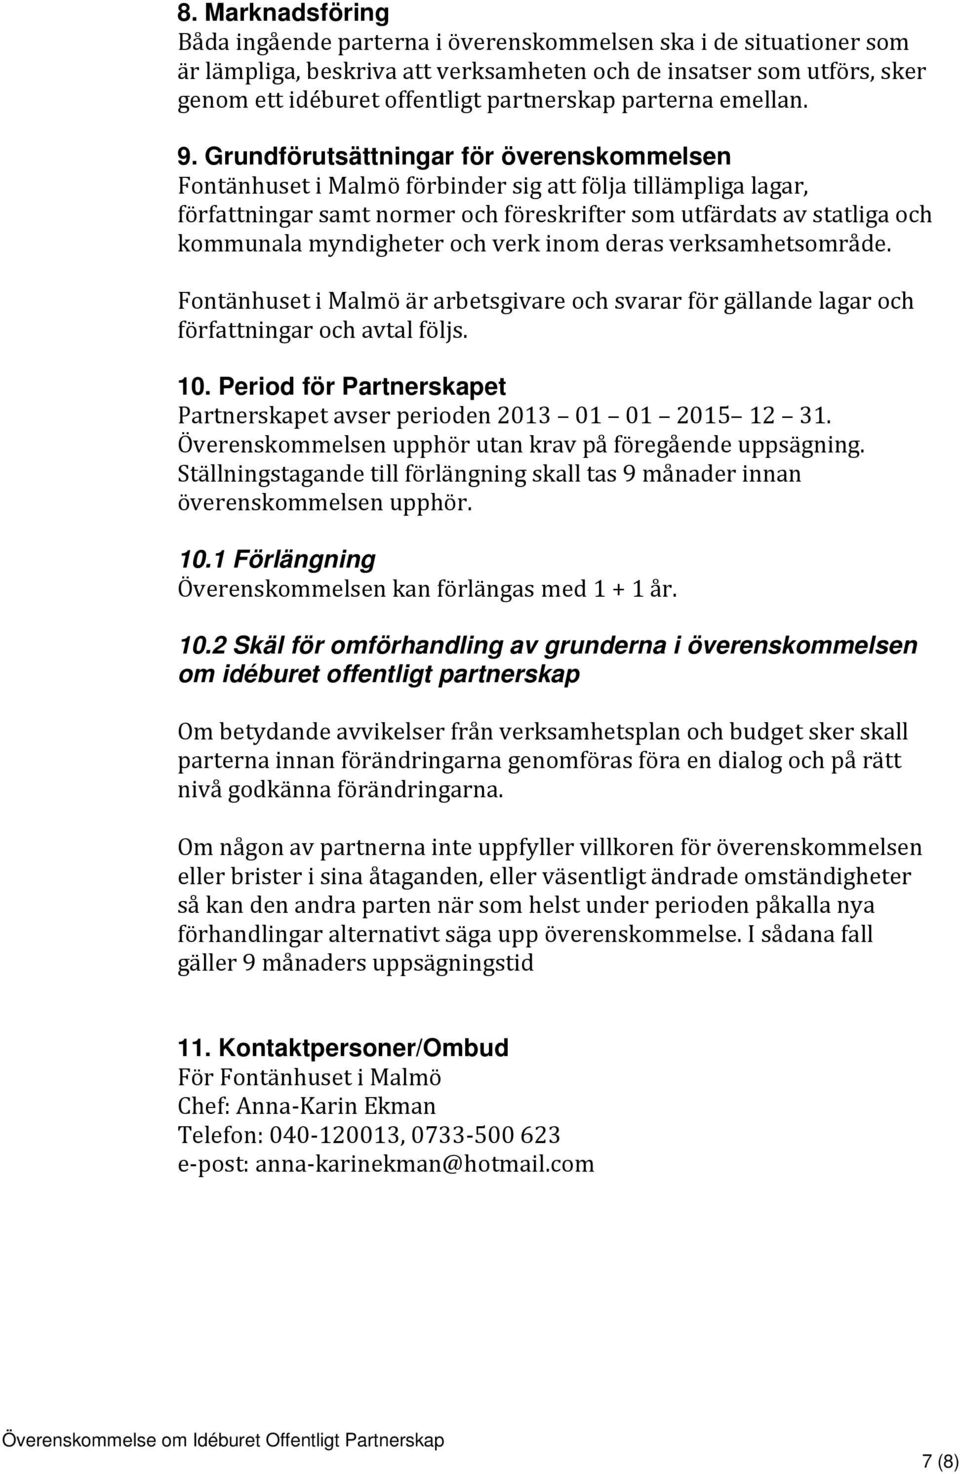 Grundförutsättningar för överenskommelsen Fontänhuset i Malmö förbinder sig att följa tillämpliga lagar, författningar samt normer och föreskrifter som utfärdats av statliga och kommunala myndigheter